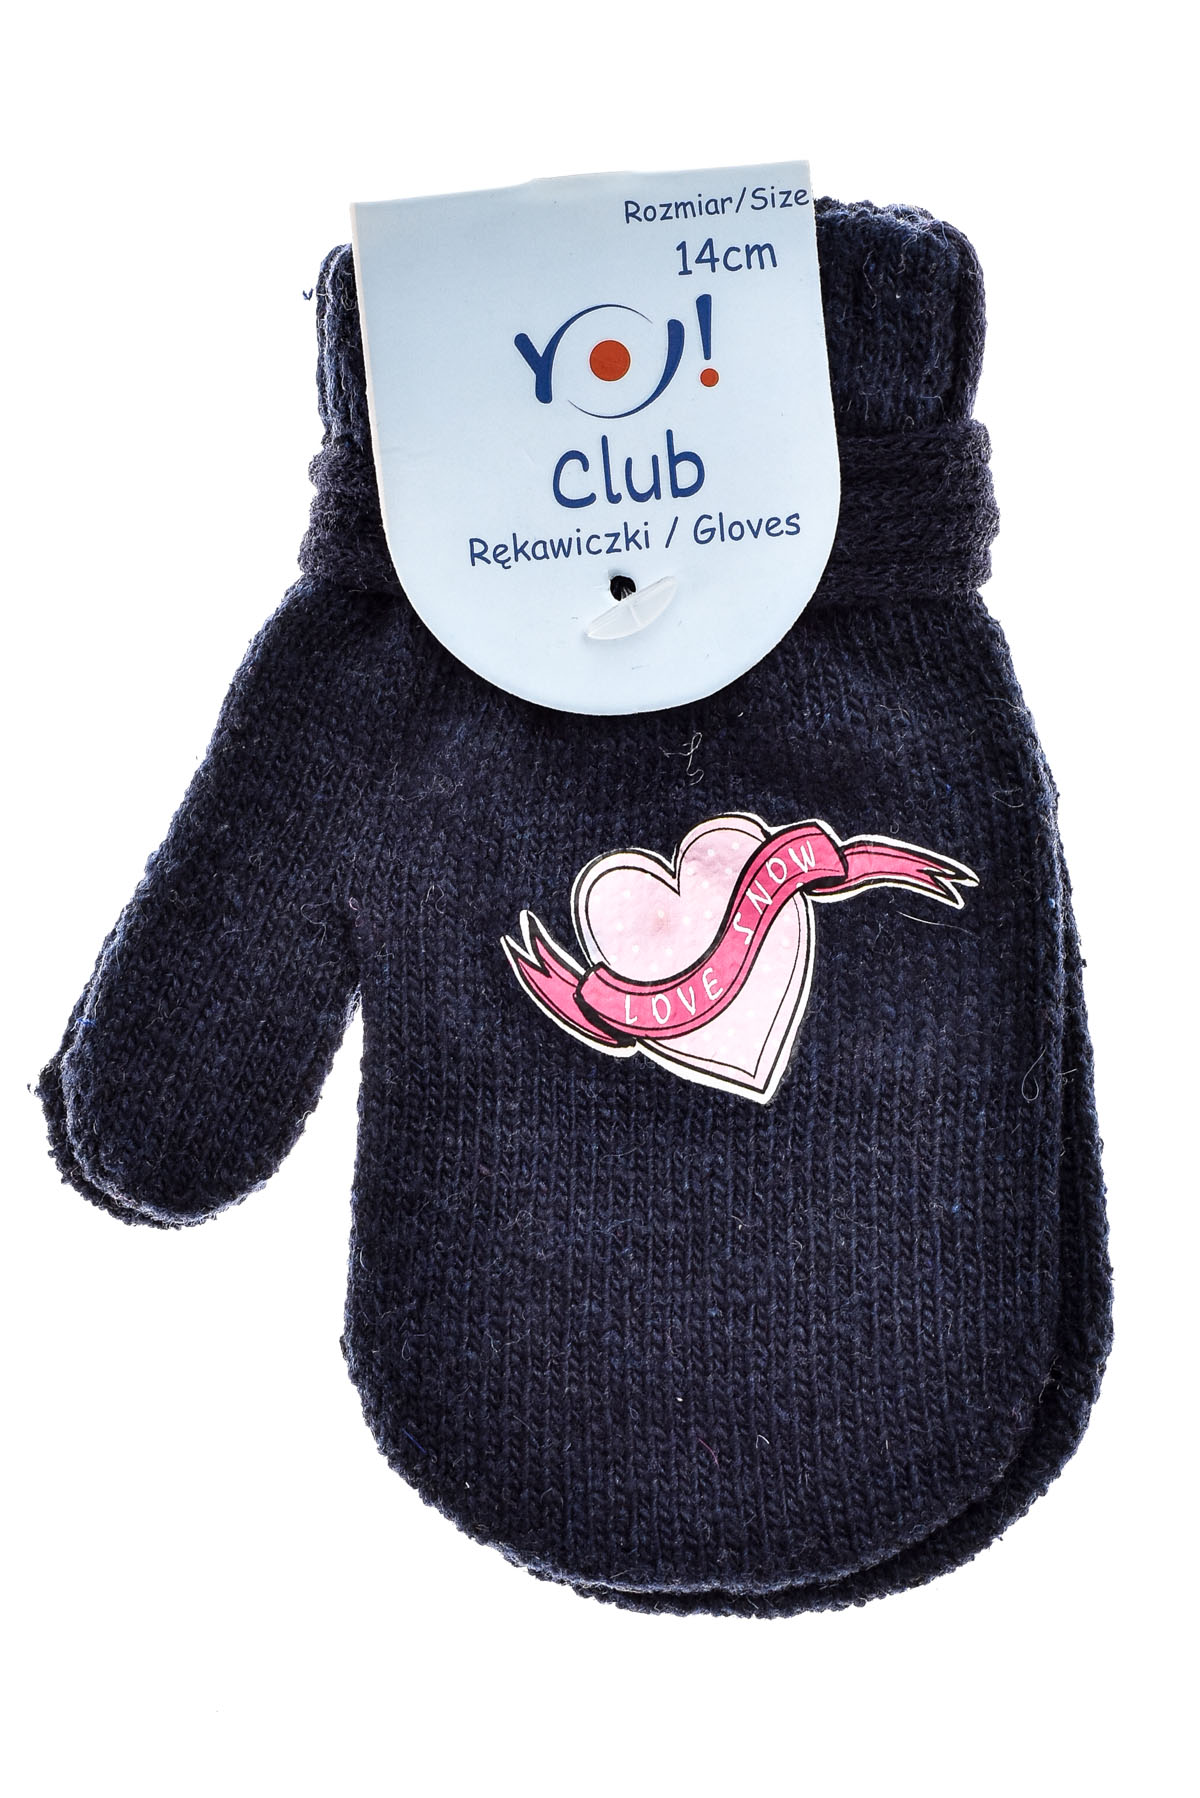 Γάντια για κορίτσι - Yo! club - 0